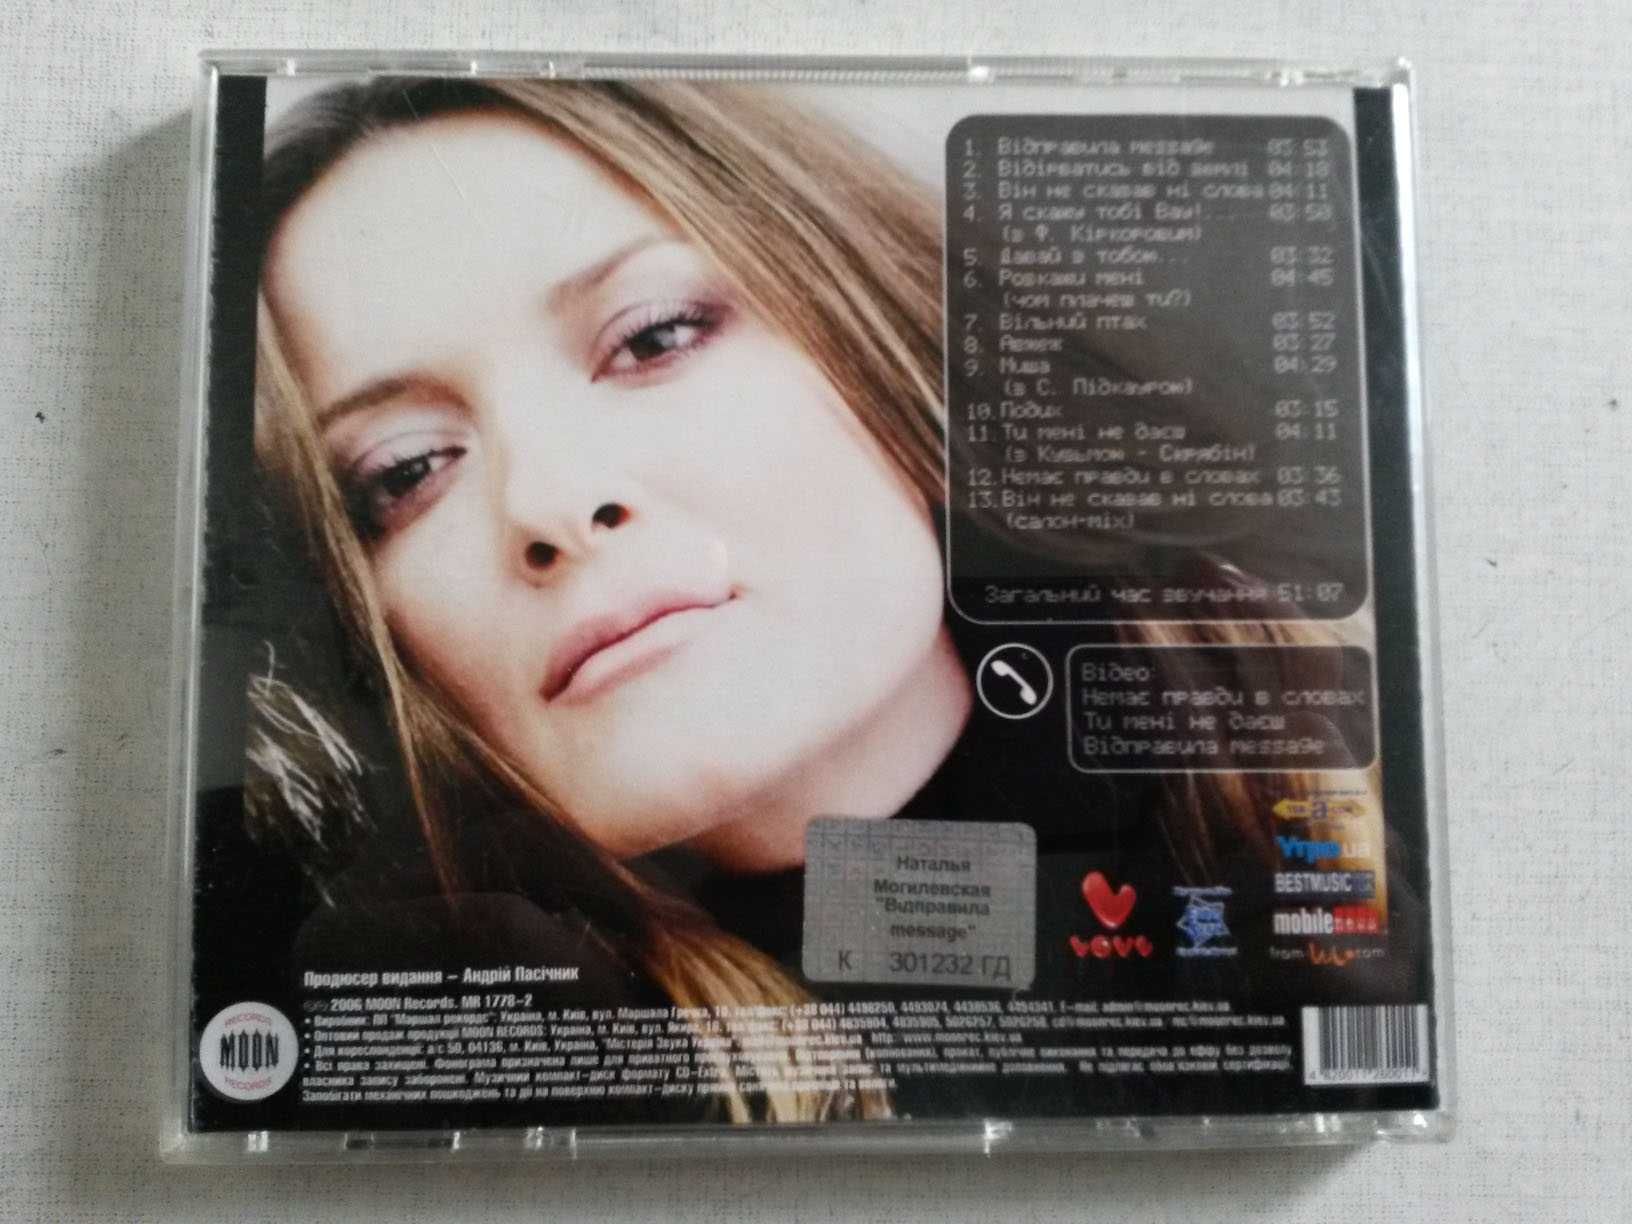 Аудио диск (CD) Наталія Могилевська - Відправила MESSAGE...